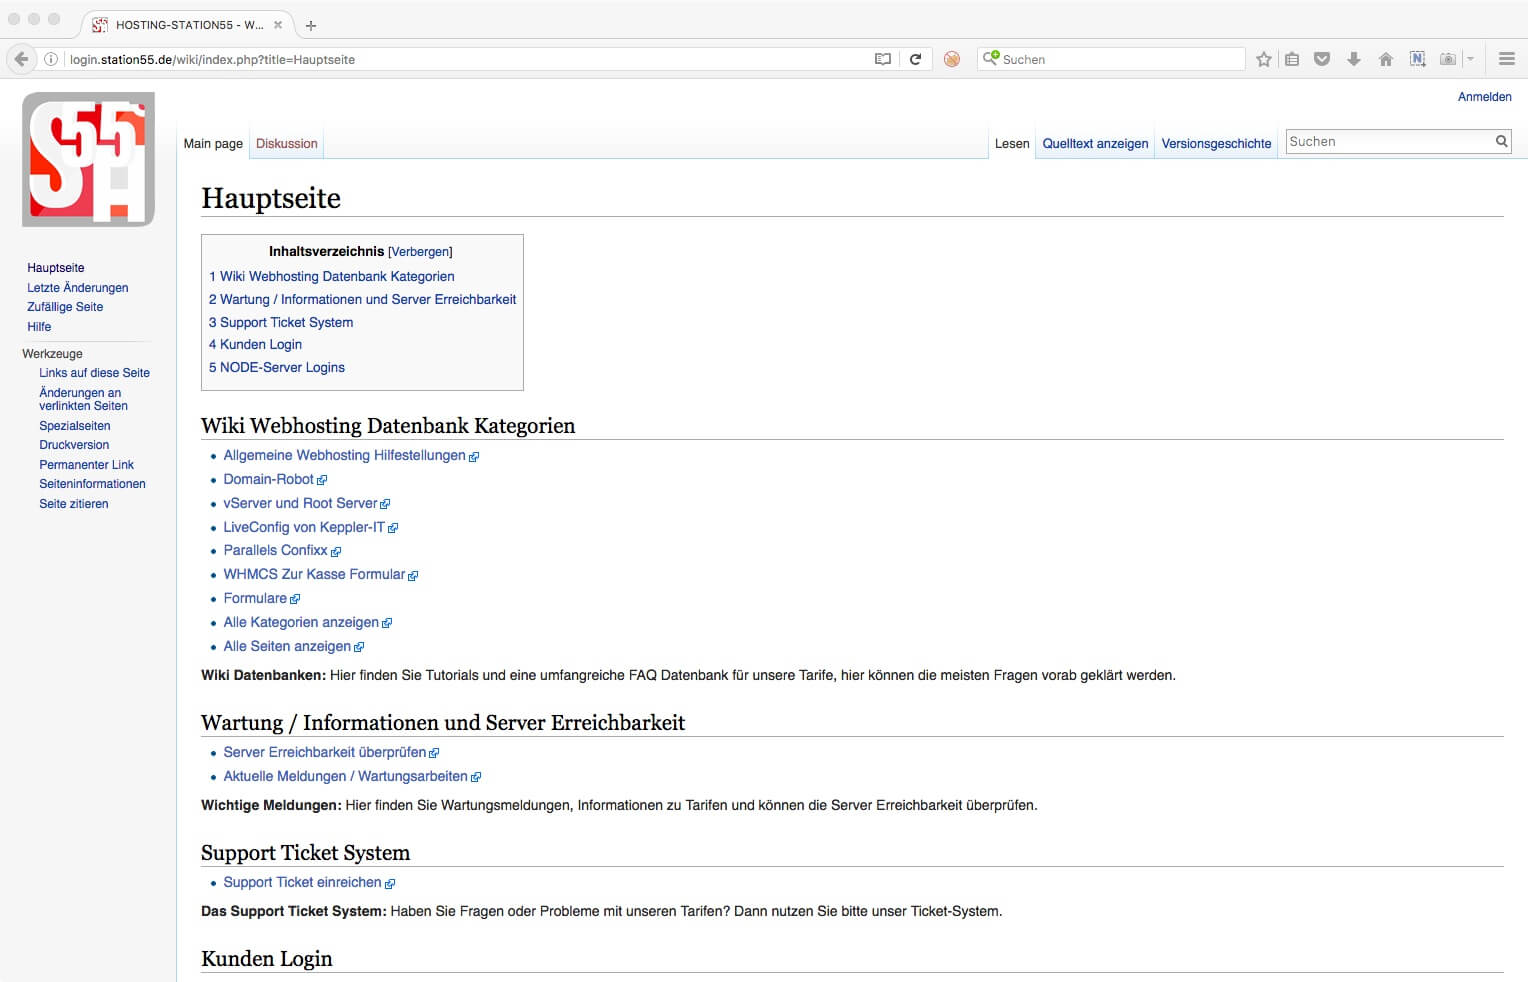 Wikipedia Webhoster FAQ Datenbank